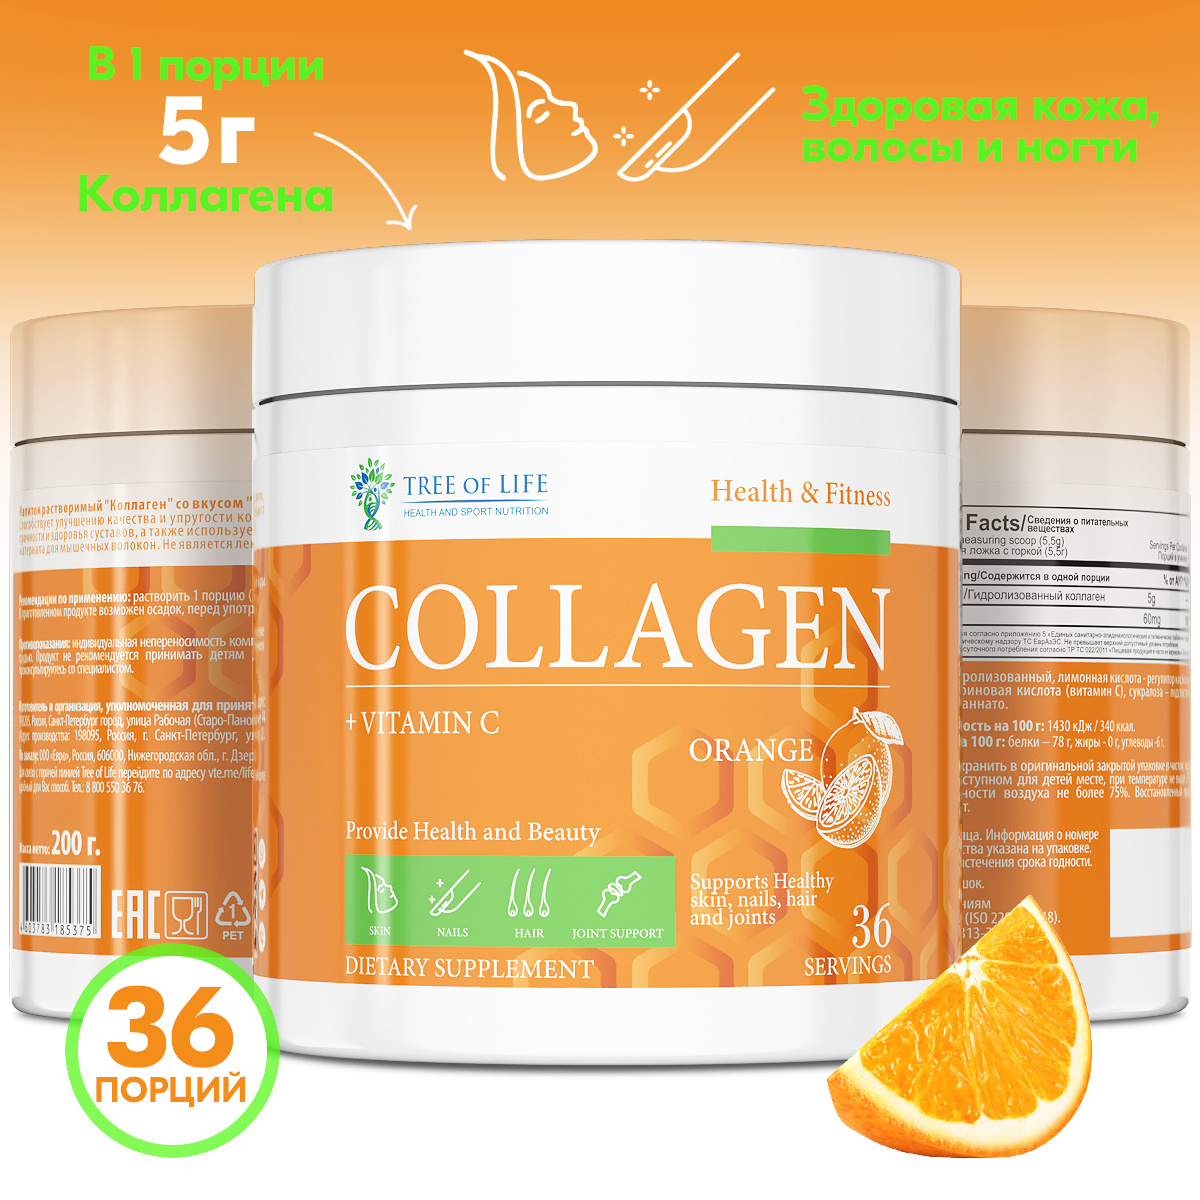 Tree of Life Коллаген + Витамин C, 36 порций вкус ананас, апельсин, малина